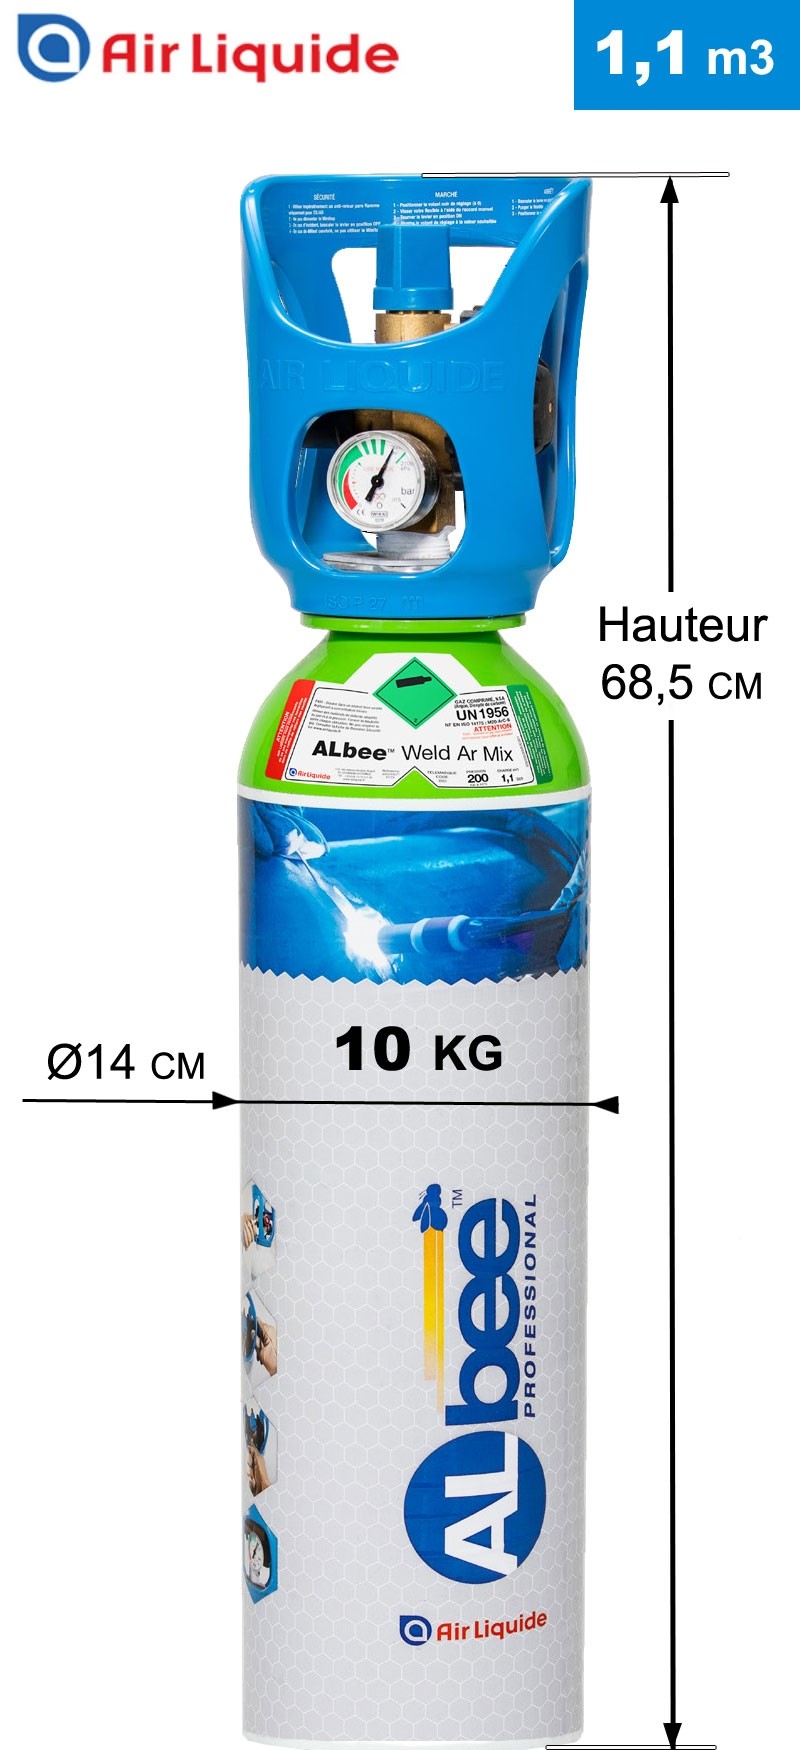 Bouteille ARGON+CO2 - ALBEE ARMIX 8% - 1 m3 AIR LIQUIDE